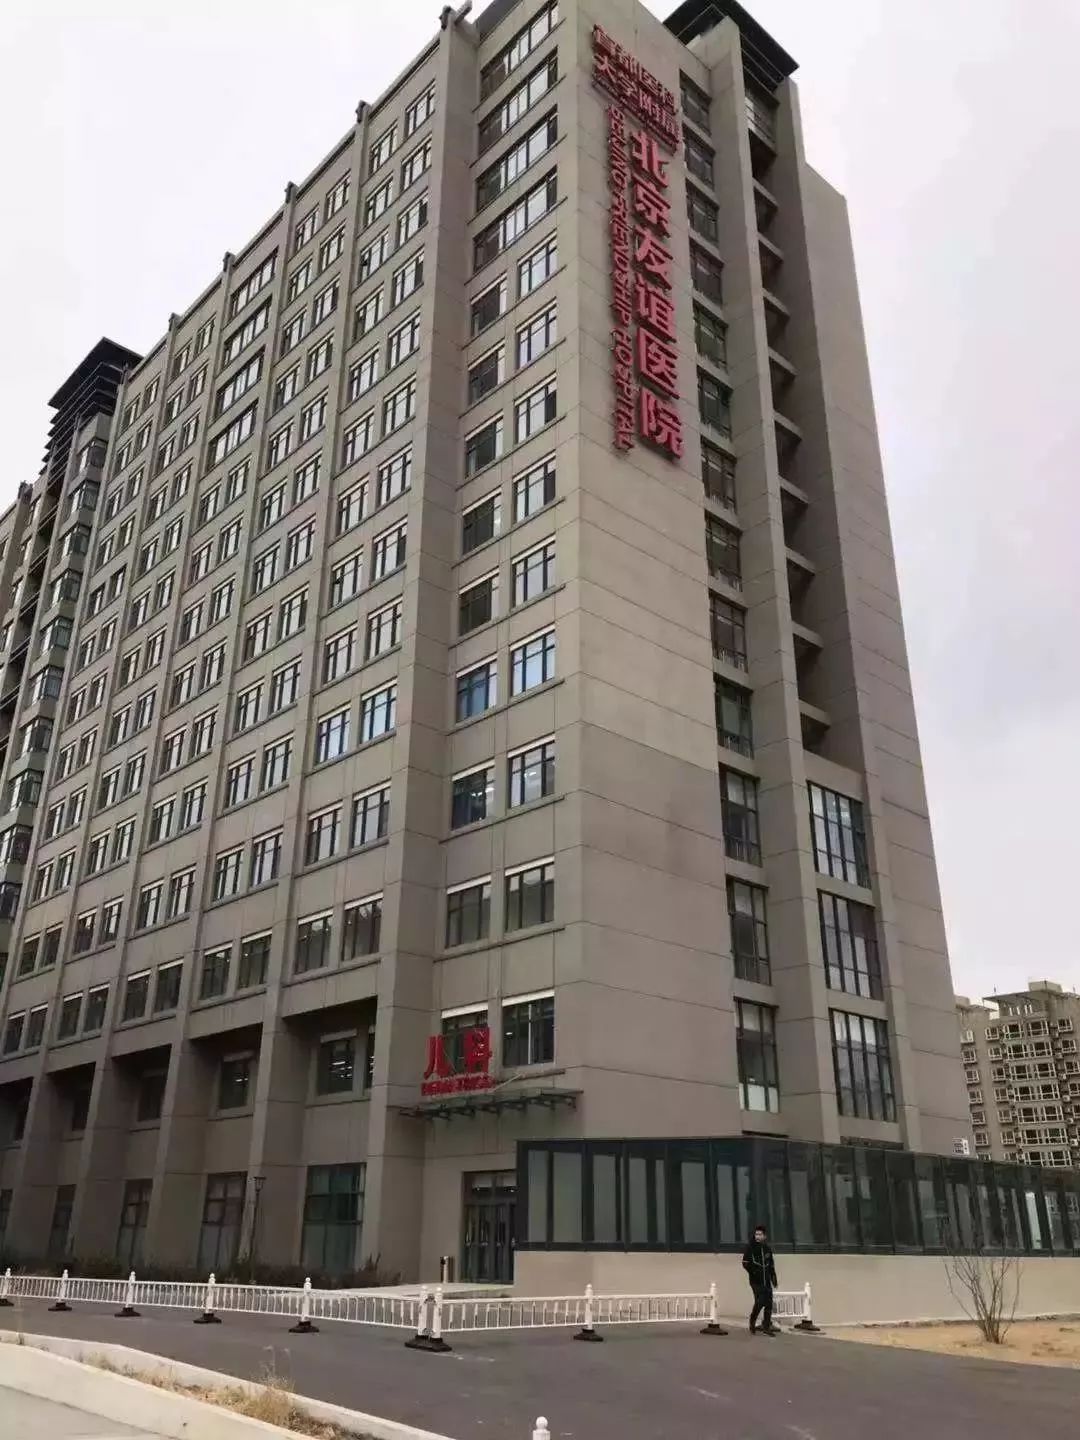 上海首批互联网医院成为市民就医“第二选项”！儿童医院：将开展在线健康管理服务 - 周到